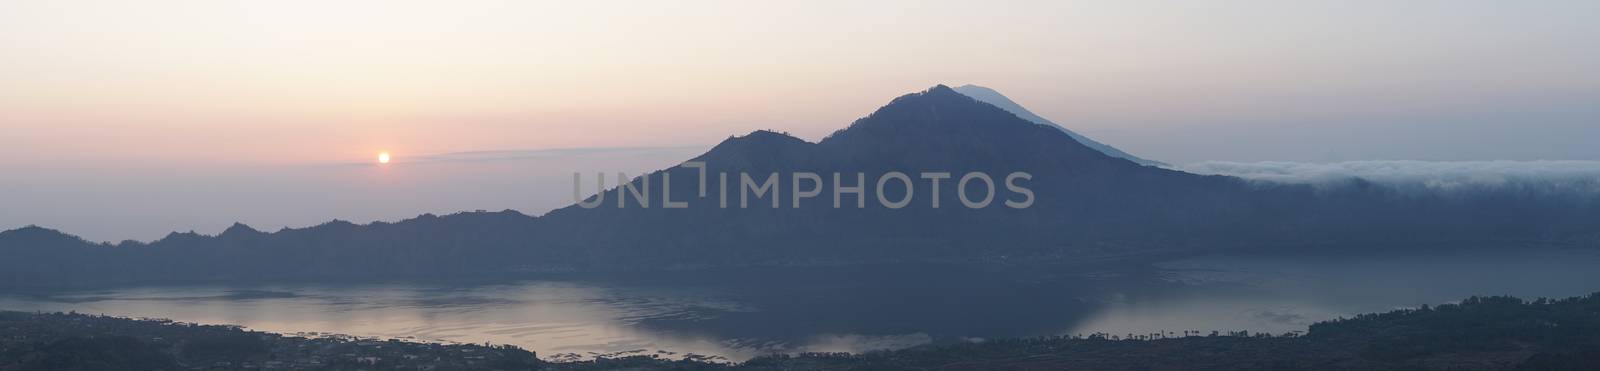 Sunrise on lake Batur, Bali, Indonesia, Asia